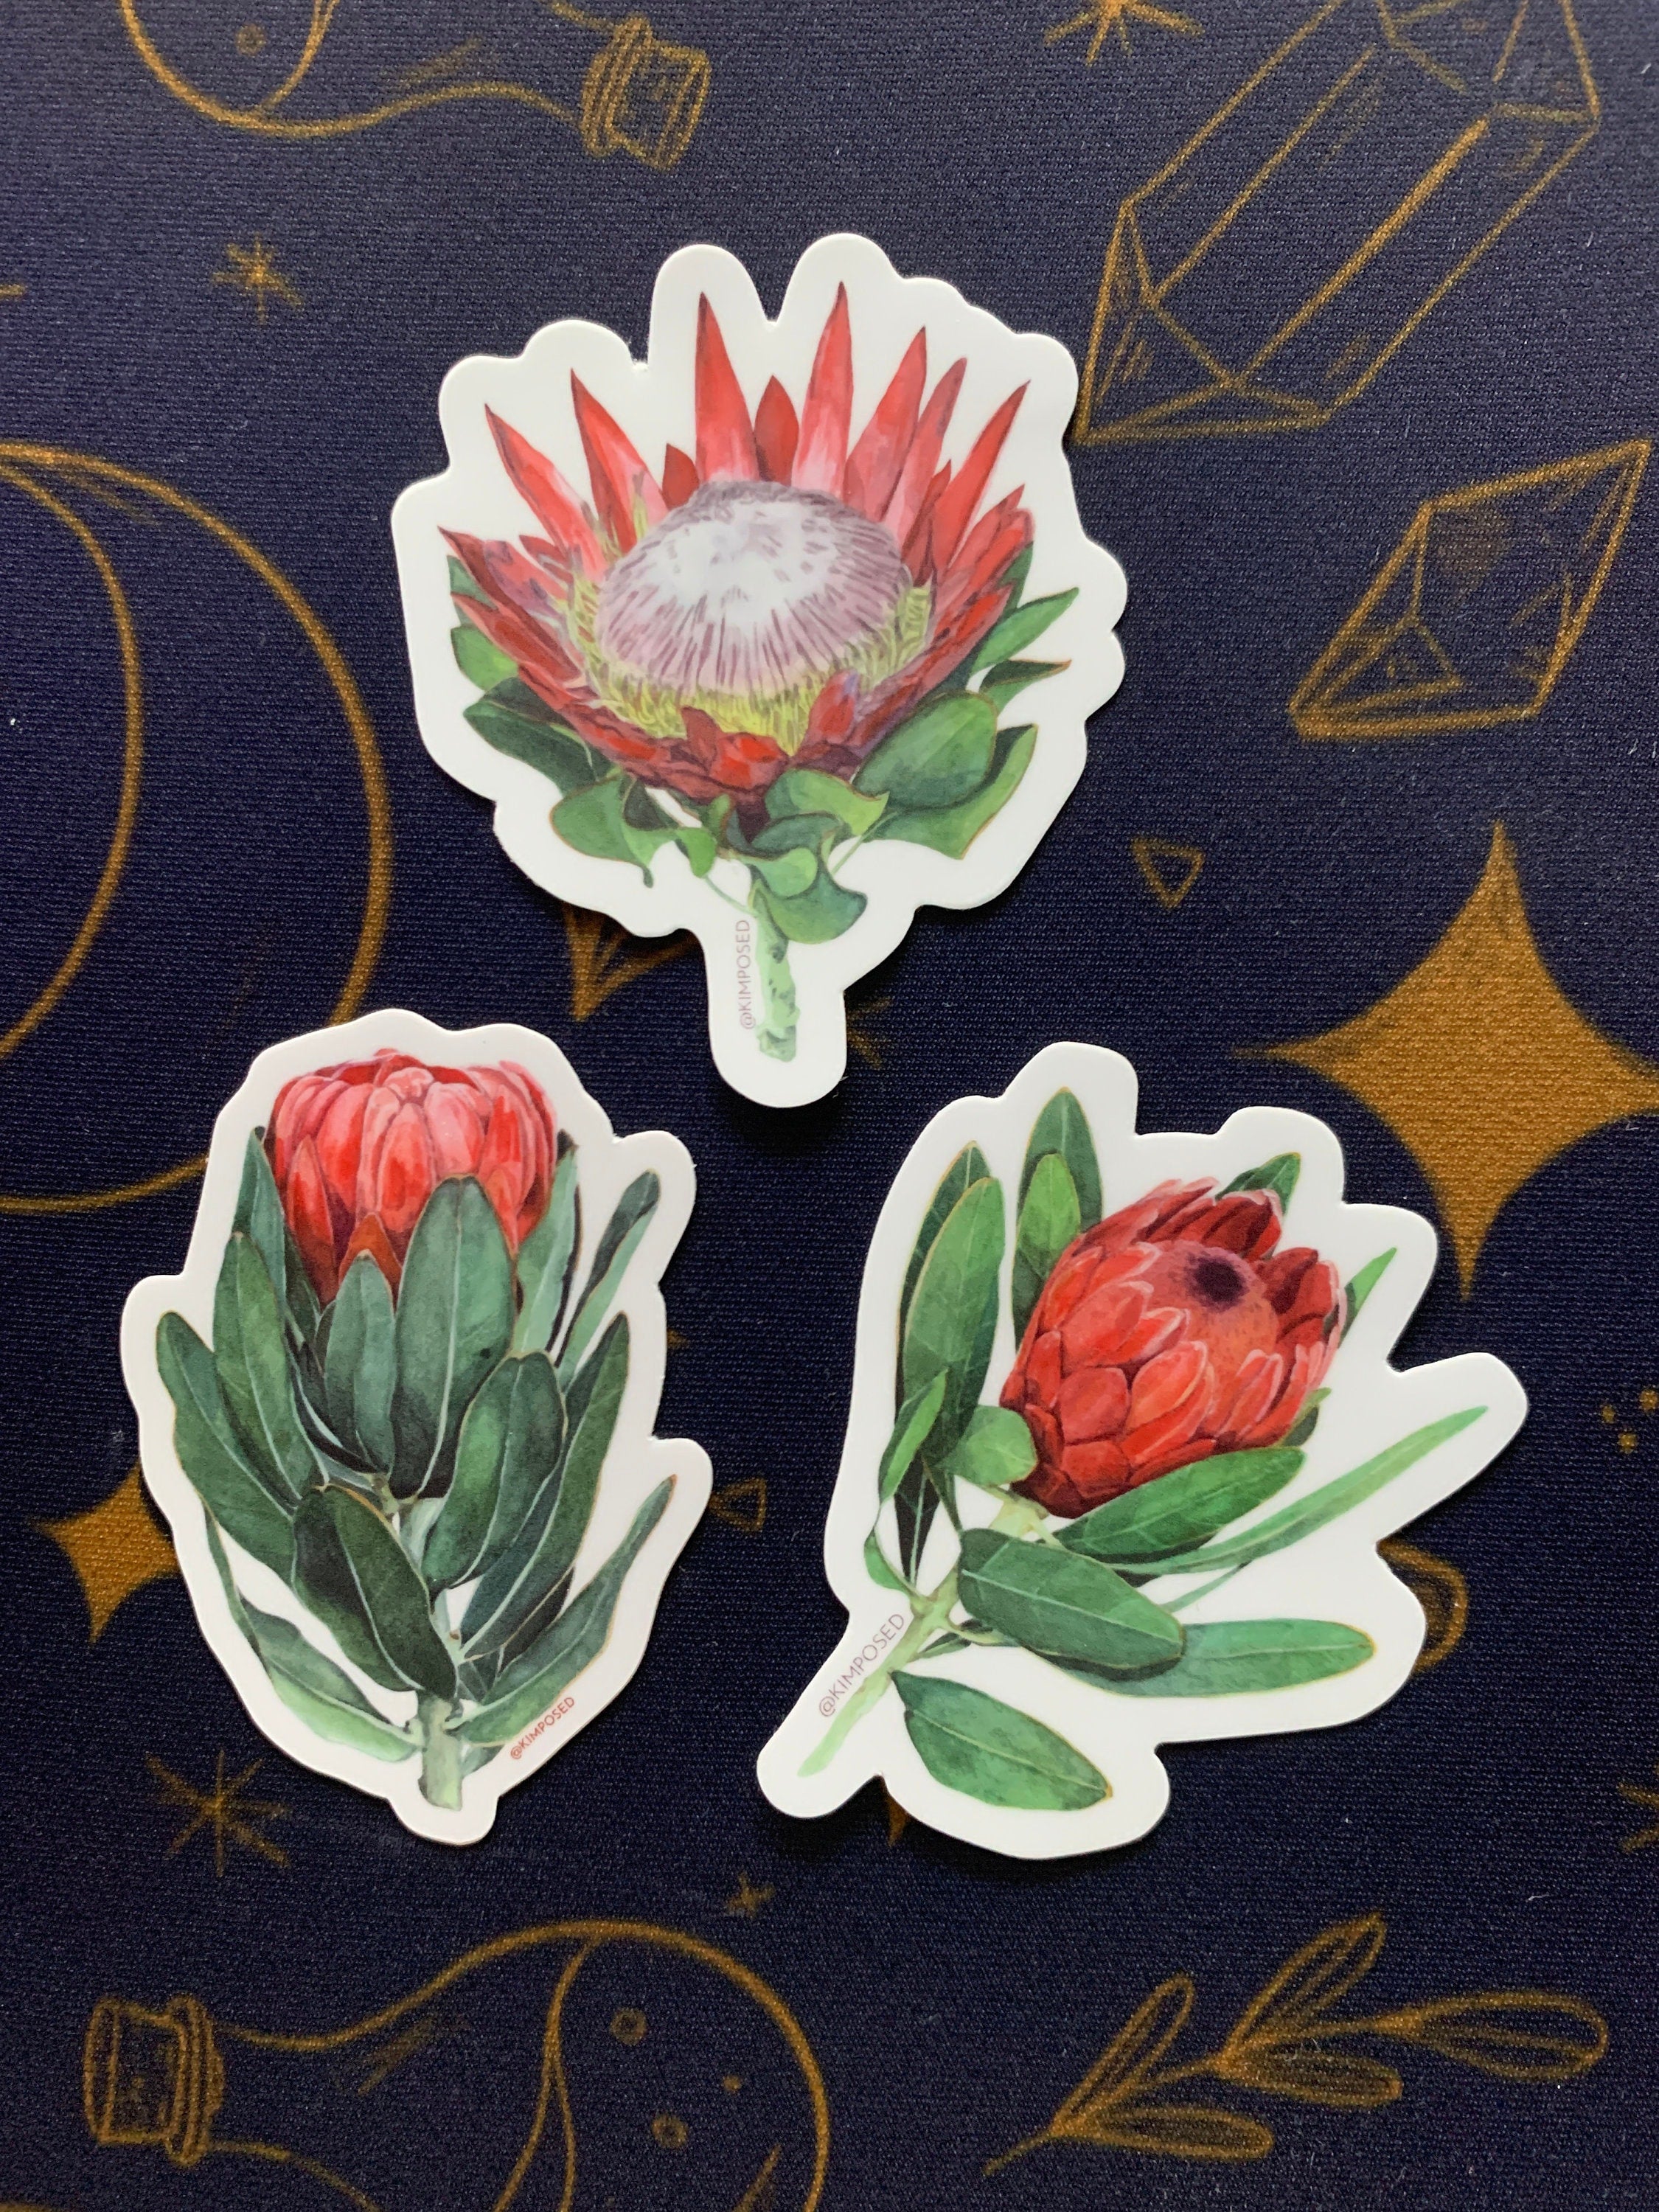 Protea Flower Trio Sticker Pack - Three 3 Waterproof Vinyl Stickers f